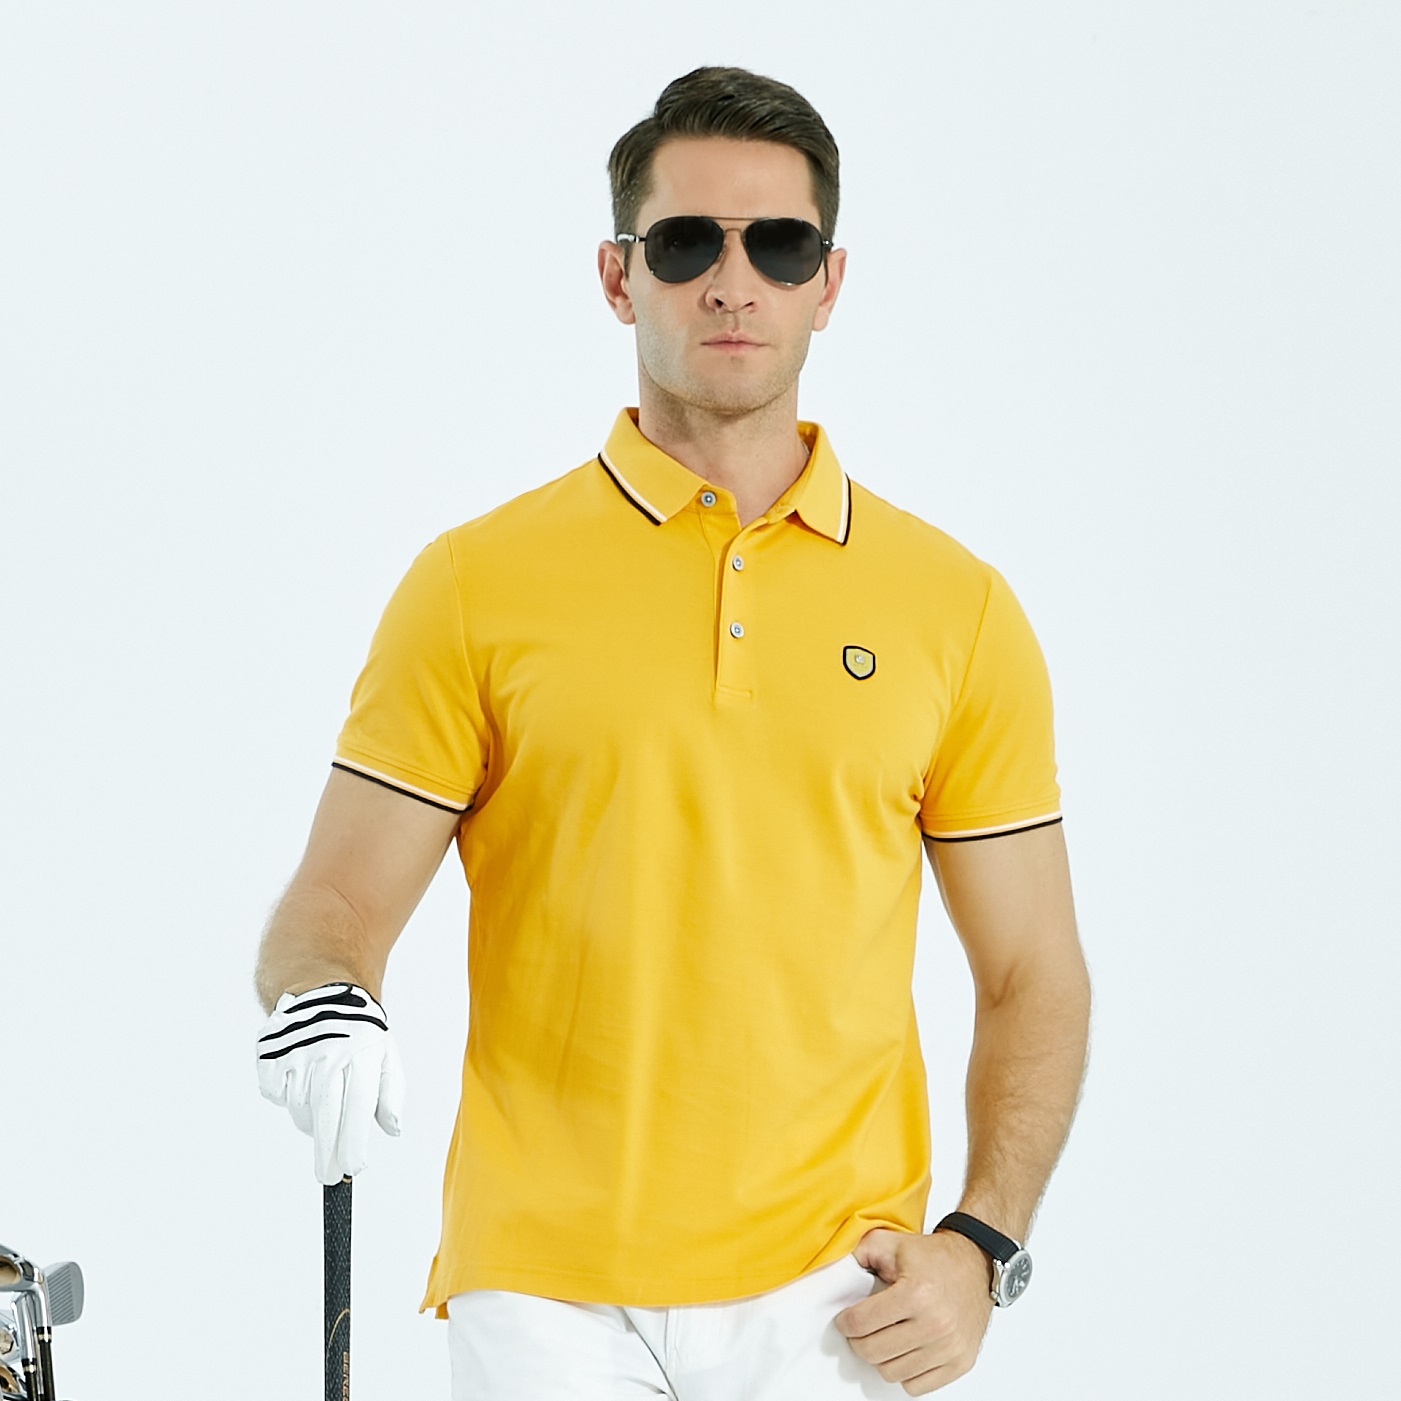 Camisetas del golf de los hombres de encargo al por mayor de la moda de la tela escocesa del estiramiento del polo bordadas